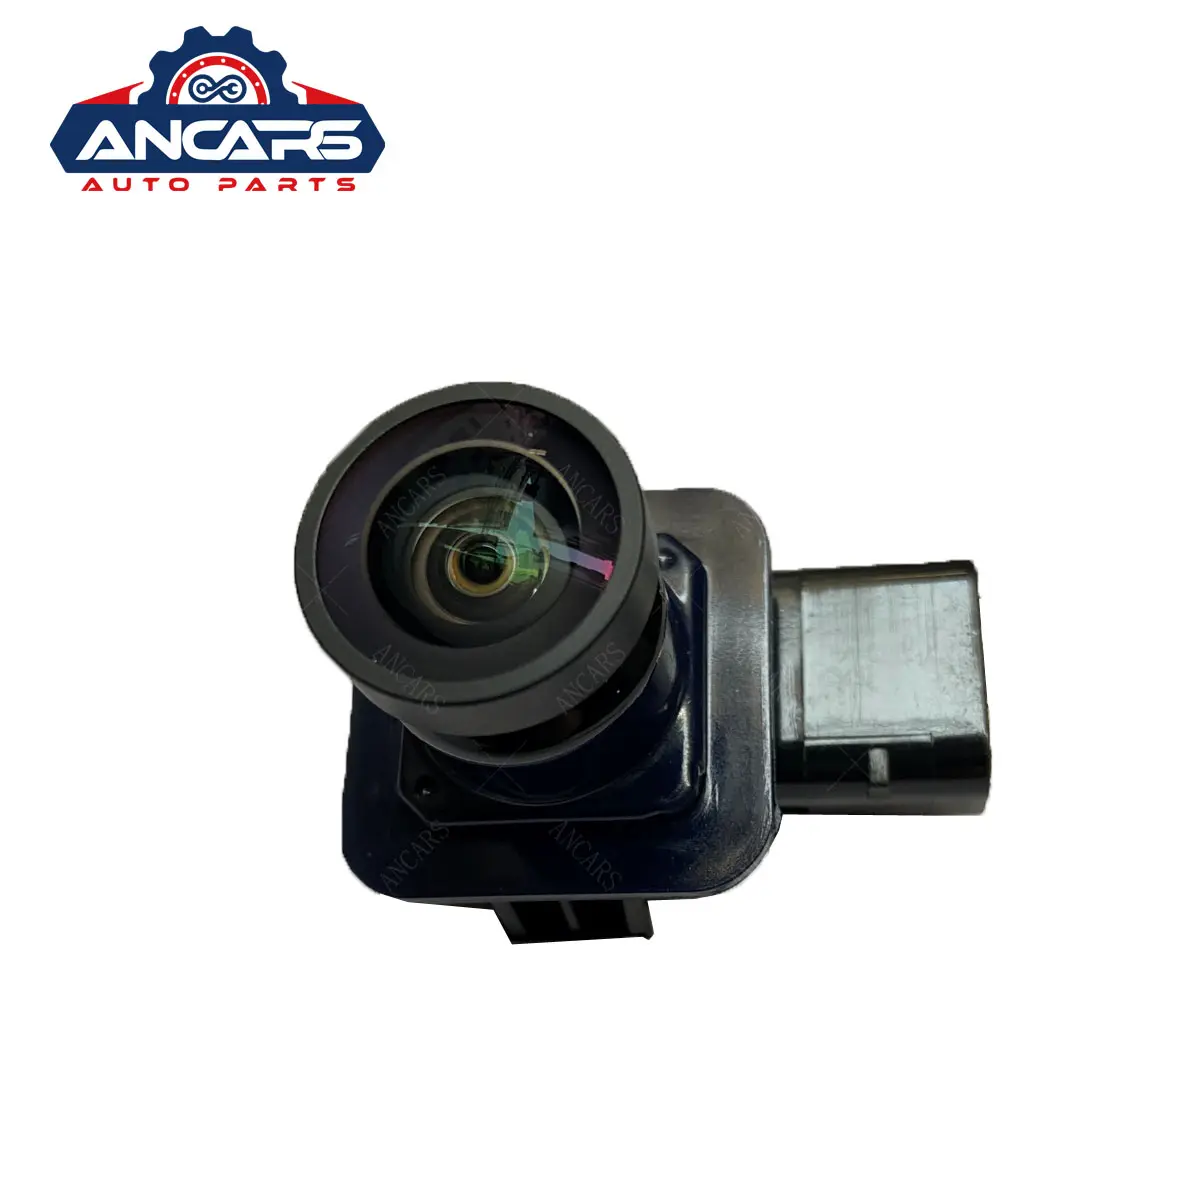 Araba yedekleme geri görüş kamerası EB5T-19G490-AA EB5T19G490AA için F0RD EXPL0RER 2011-2015 dikiz geri görüş kamerası Park asistanı kamera